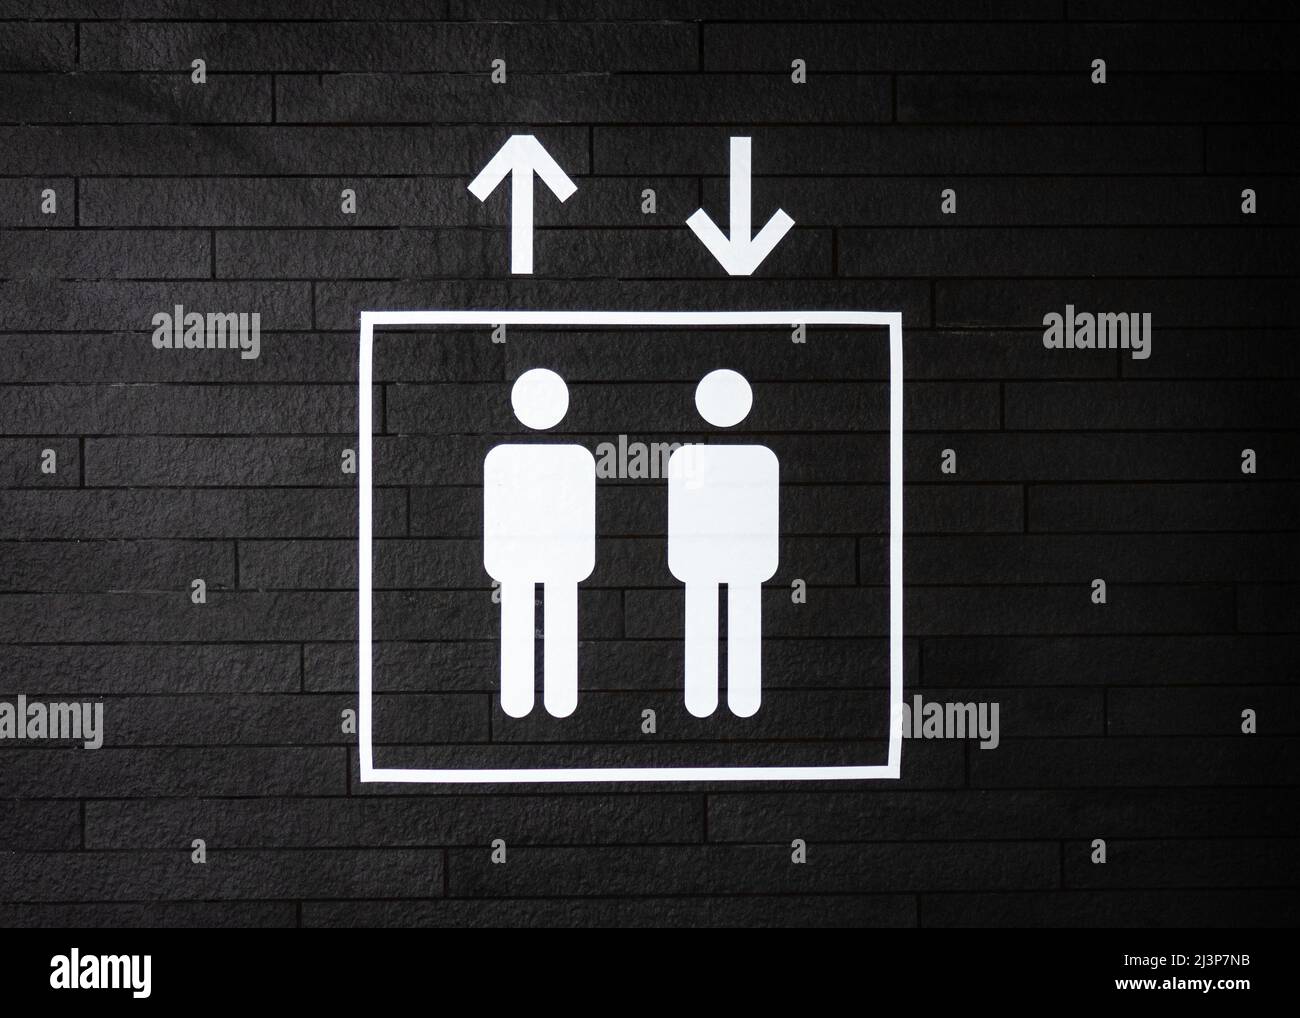 Linee pulite simbolo di sollevamento che si alza e si abbassa in vernice bianca su pareti con texture nero scuro. Due simboli di uomini in piedi in ascensore. Foto Stock